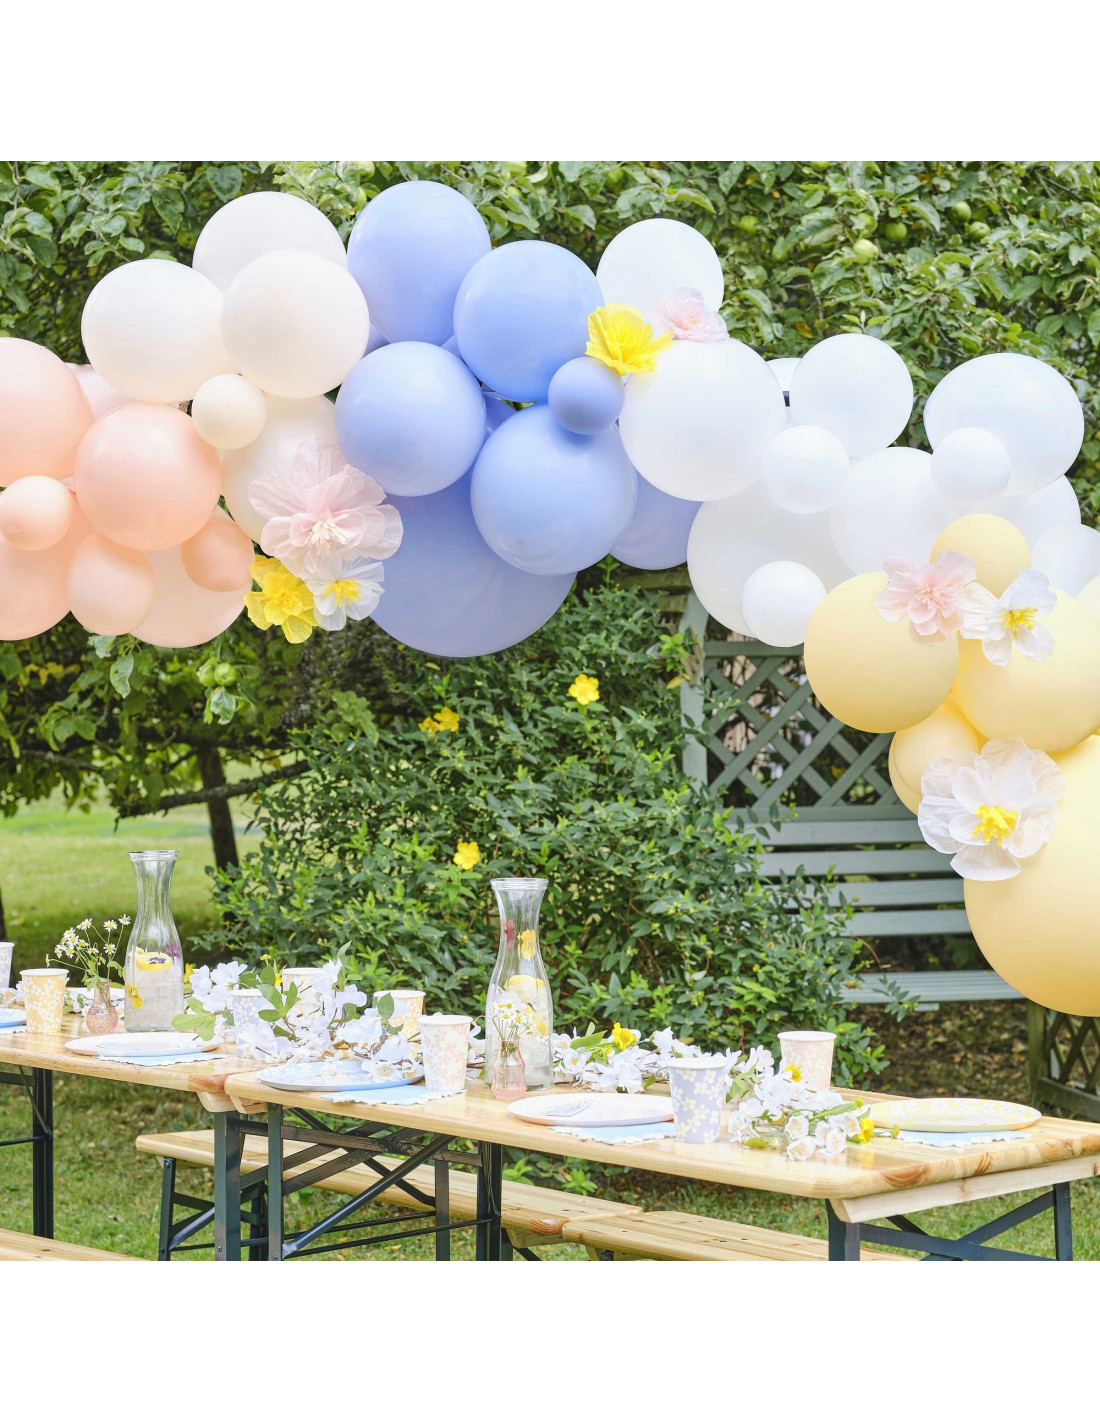 Ballon pastel pois blancs - deco anniversaire, baby shower, paques